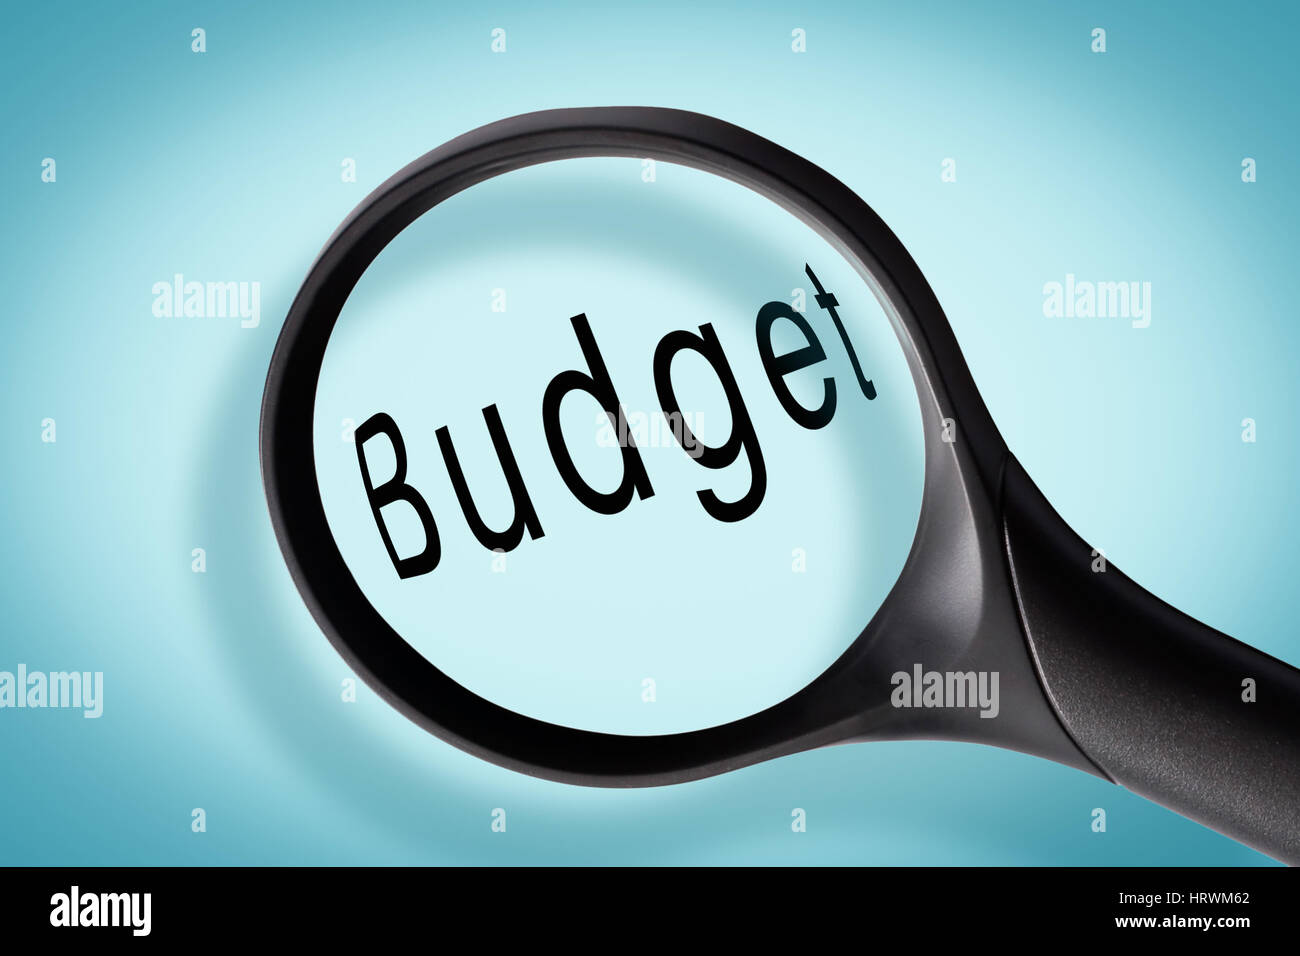 Budget mot vu à travers une loupe, concept budgétaire Banque D'Images